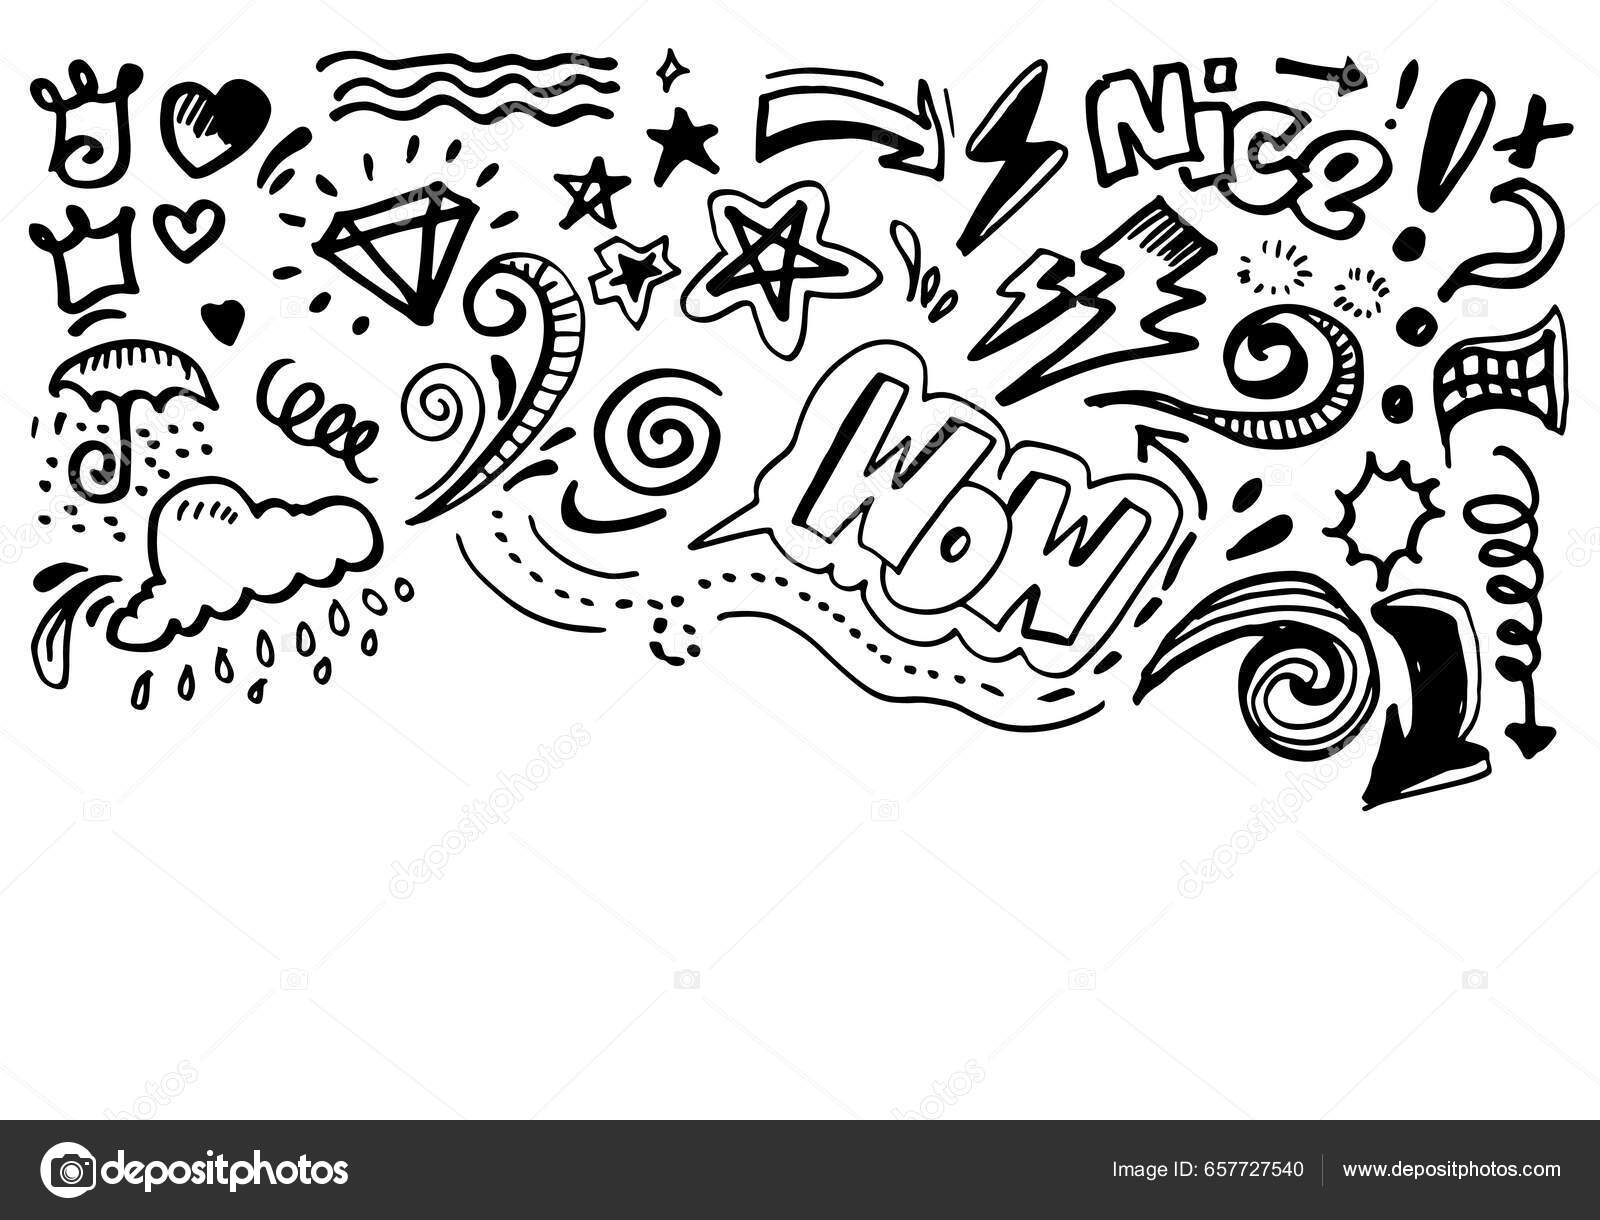 Símbolo de texto boo desenhado à mão estilo doodle de desenho